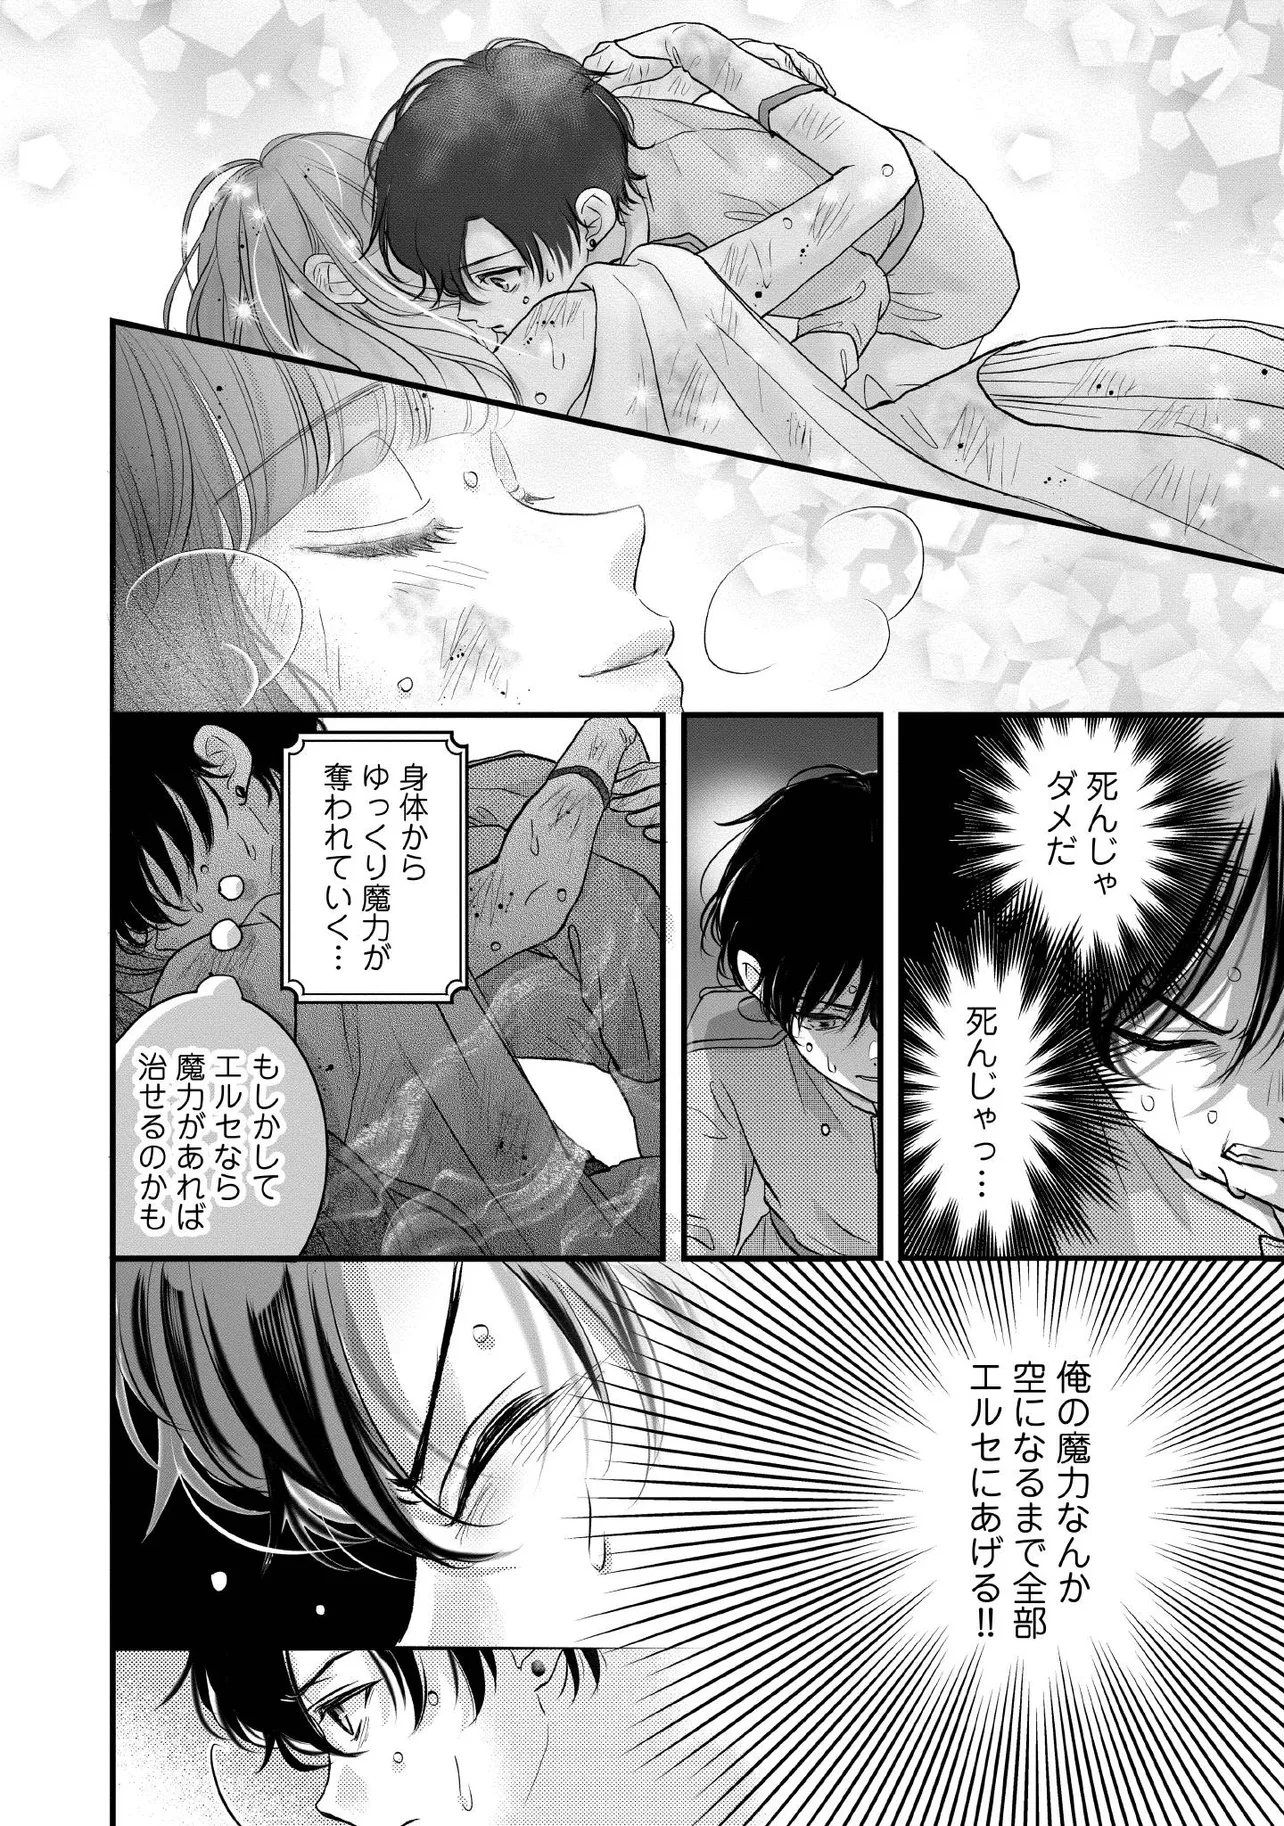 Karappo Seijo to shite Suterareta Hazu ga, Totsugi-saki no Koutei Heika ni Dekiaisareteimasu - Chapter 13.4 - Page 2